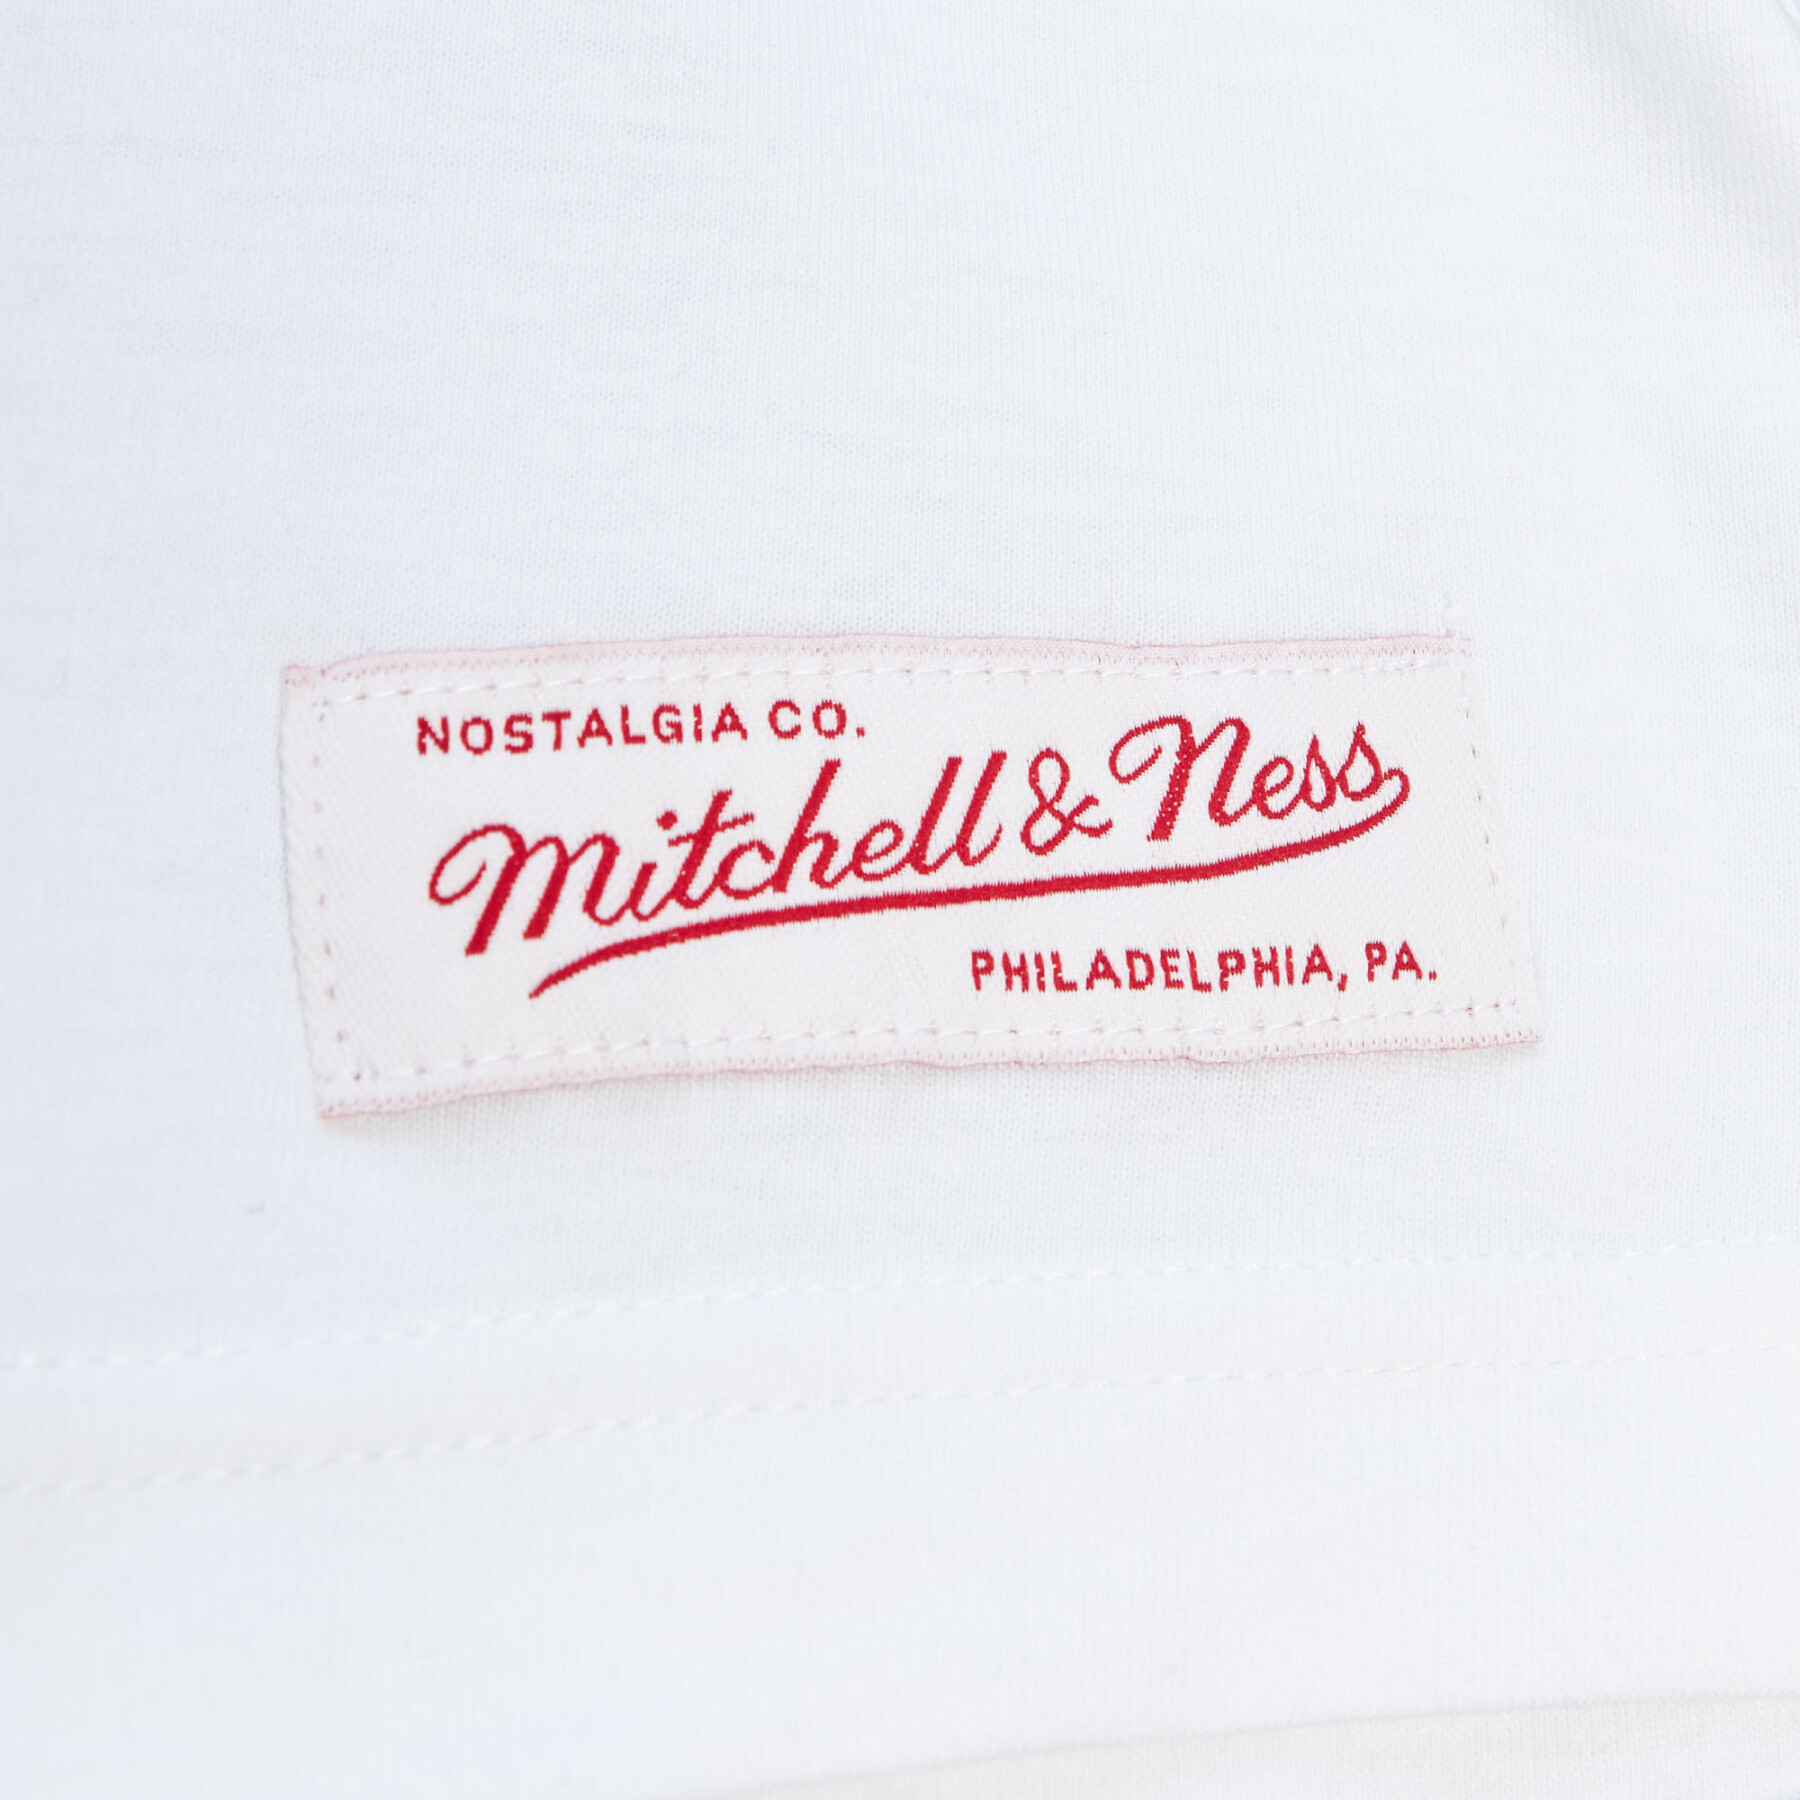 T-shirt Mitchell & Ness label